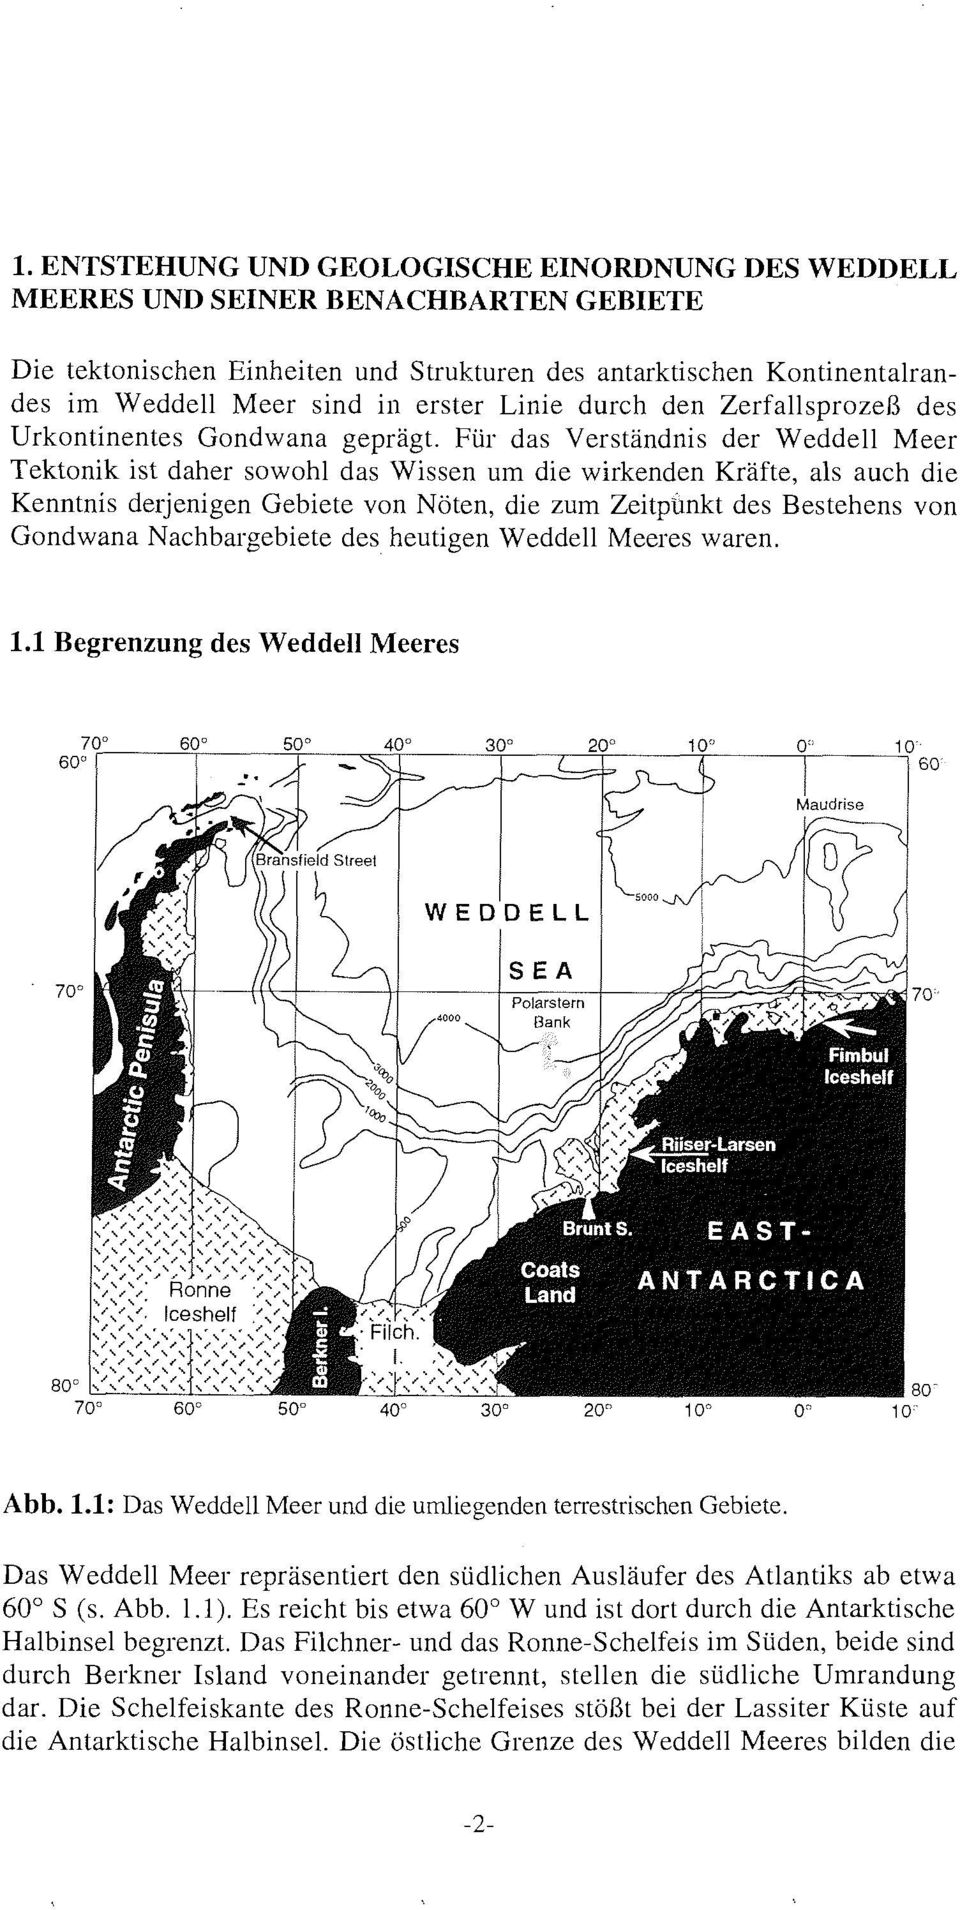 derjenigen Gebiete von NÃ ten die zum Zeitpunkt des Bestehens von Gondwana Nachbargebiete des heutigen Weddell Meeres waren. 1.1 Begrenzung des Weddell Meeres Abb. 1.1: Das Weddell Meer und die umliegenden terrestrischen Gebiete.